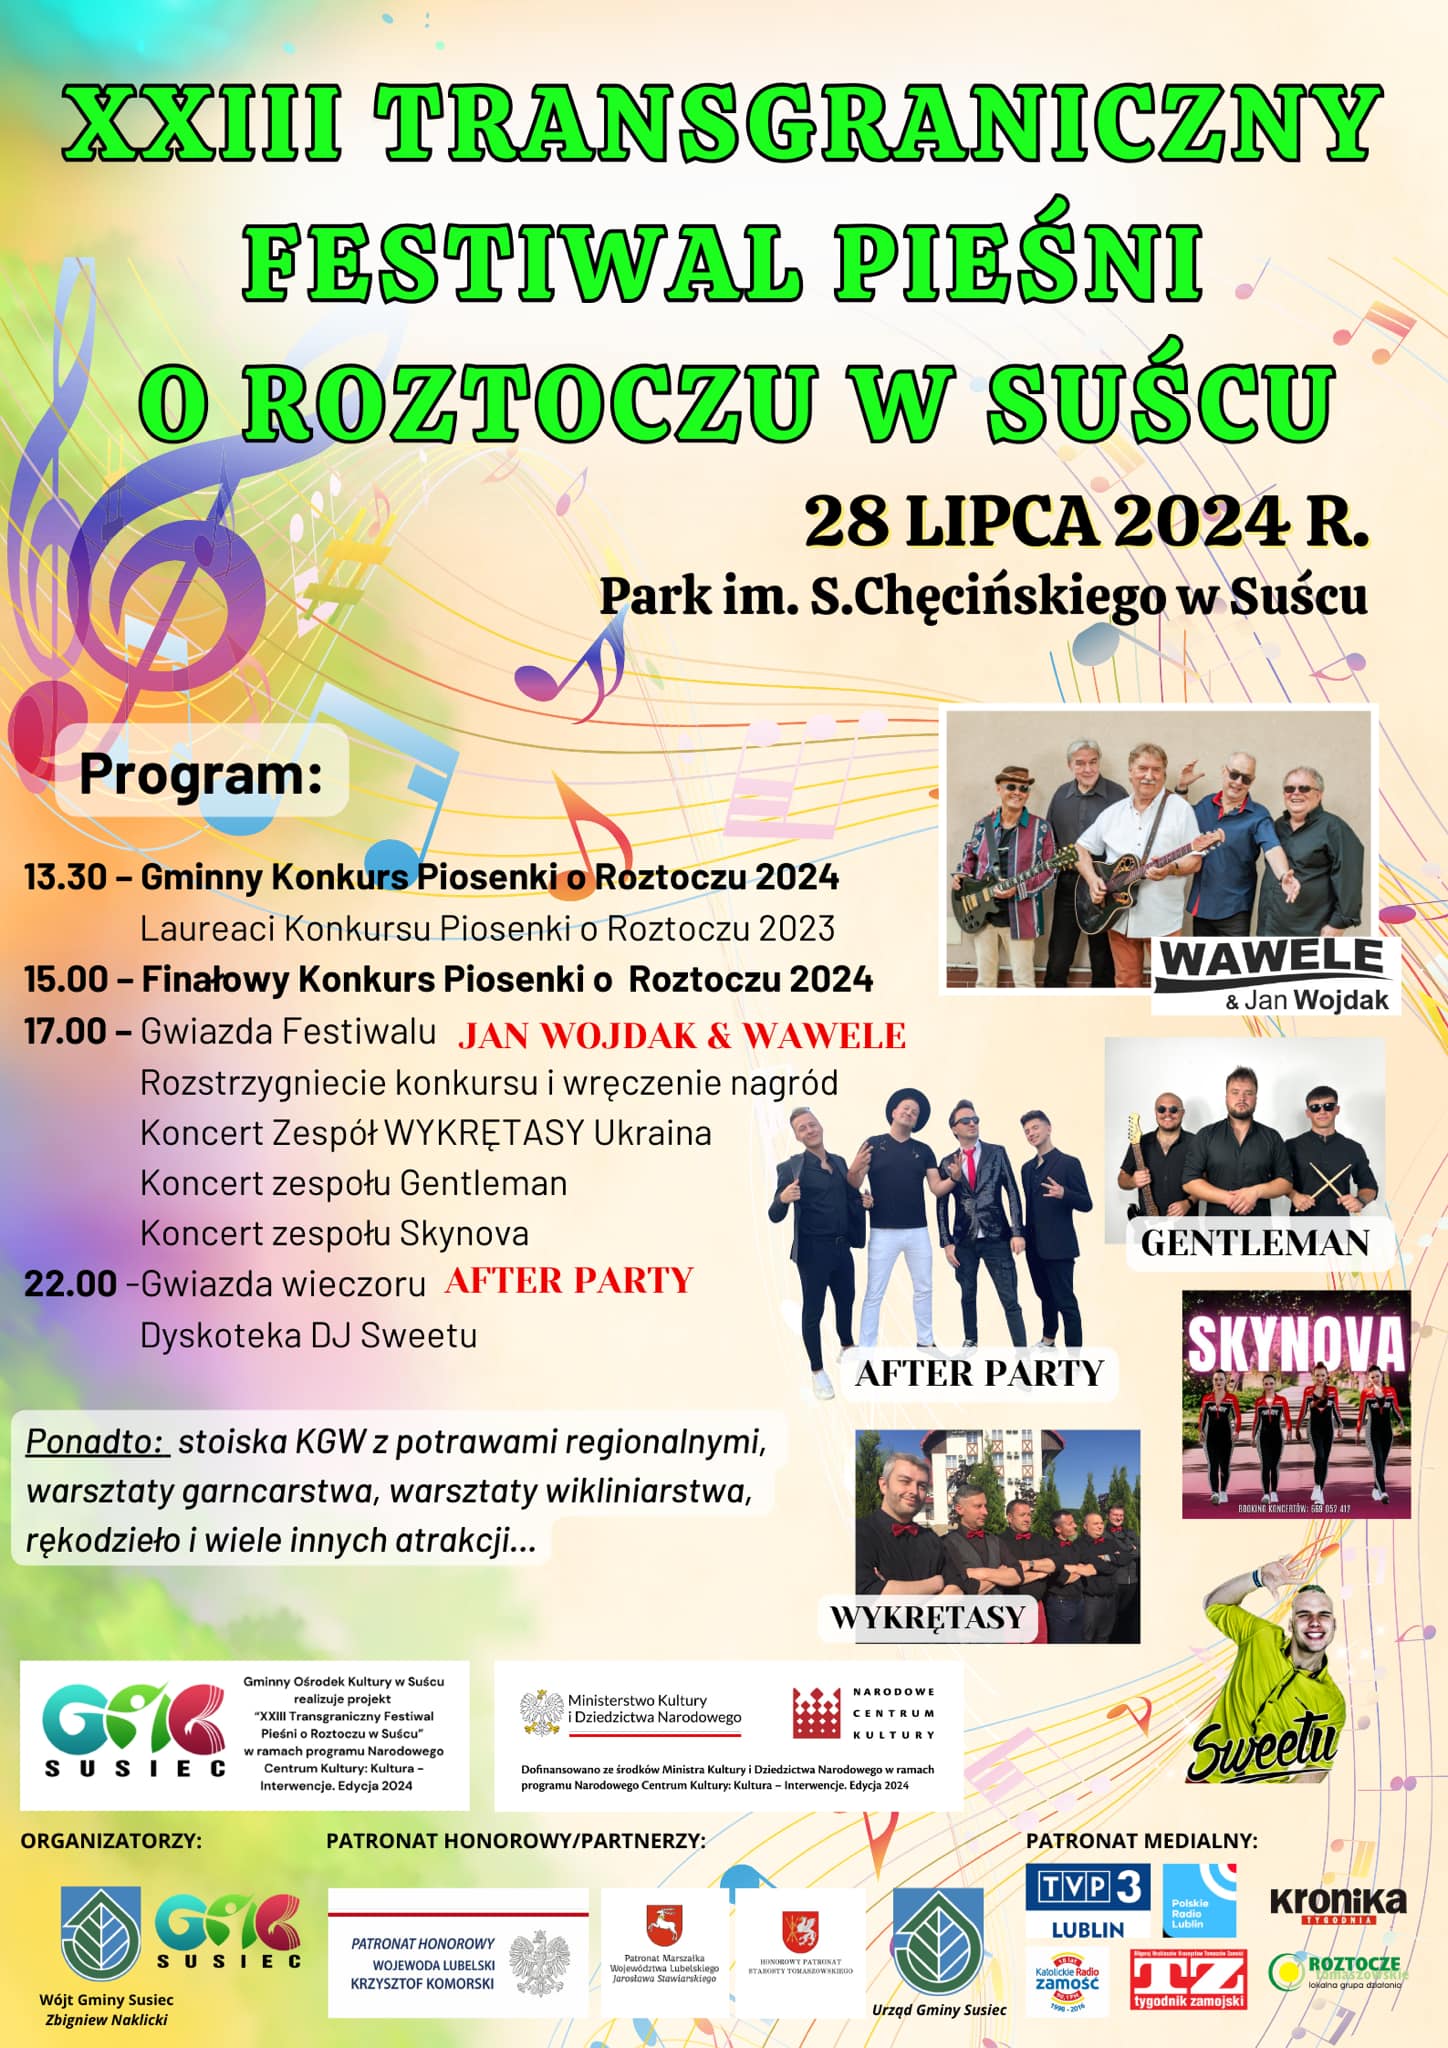 Transgraniczny Festiwal Pieśni o Roztoczu w Suścu